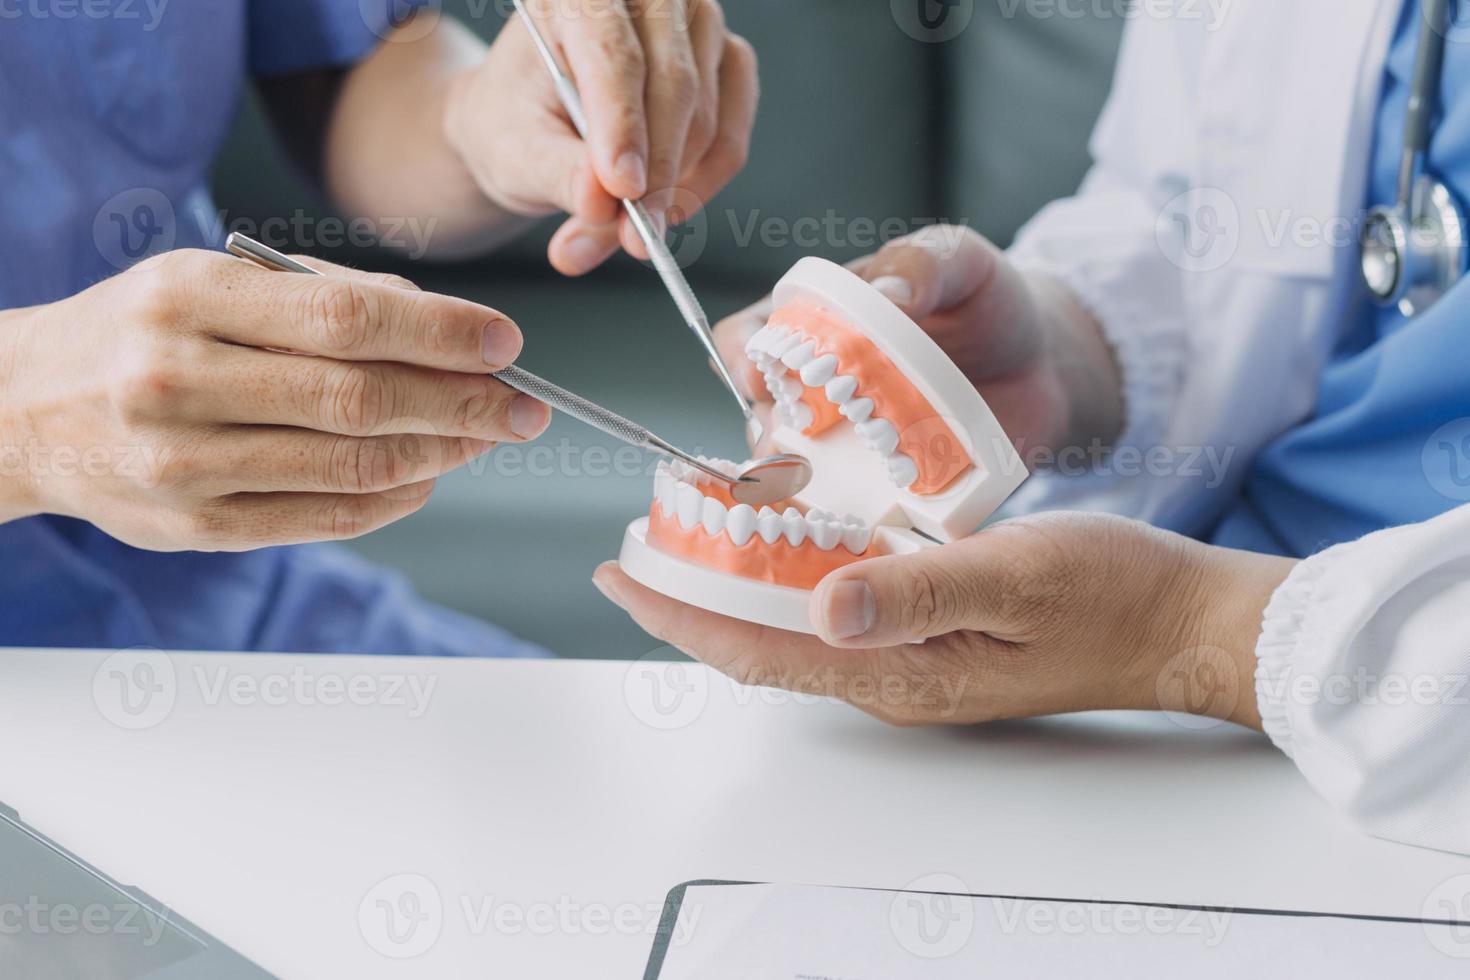 zahnärzte diskutieren zahnprobleme und melden den patienten ein röntgenbild auf einem laptop-bildschirm. foto